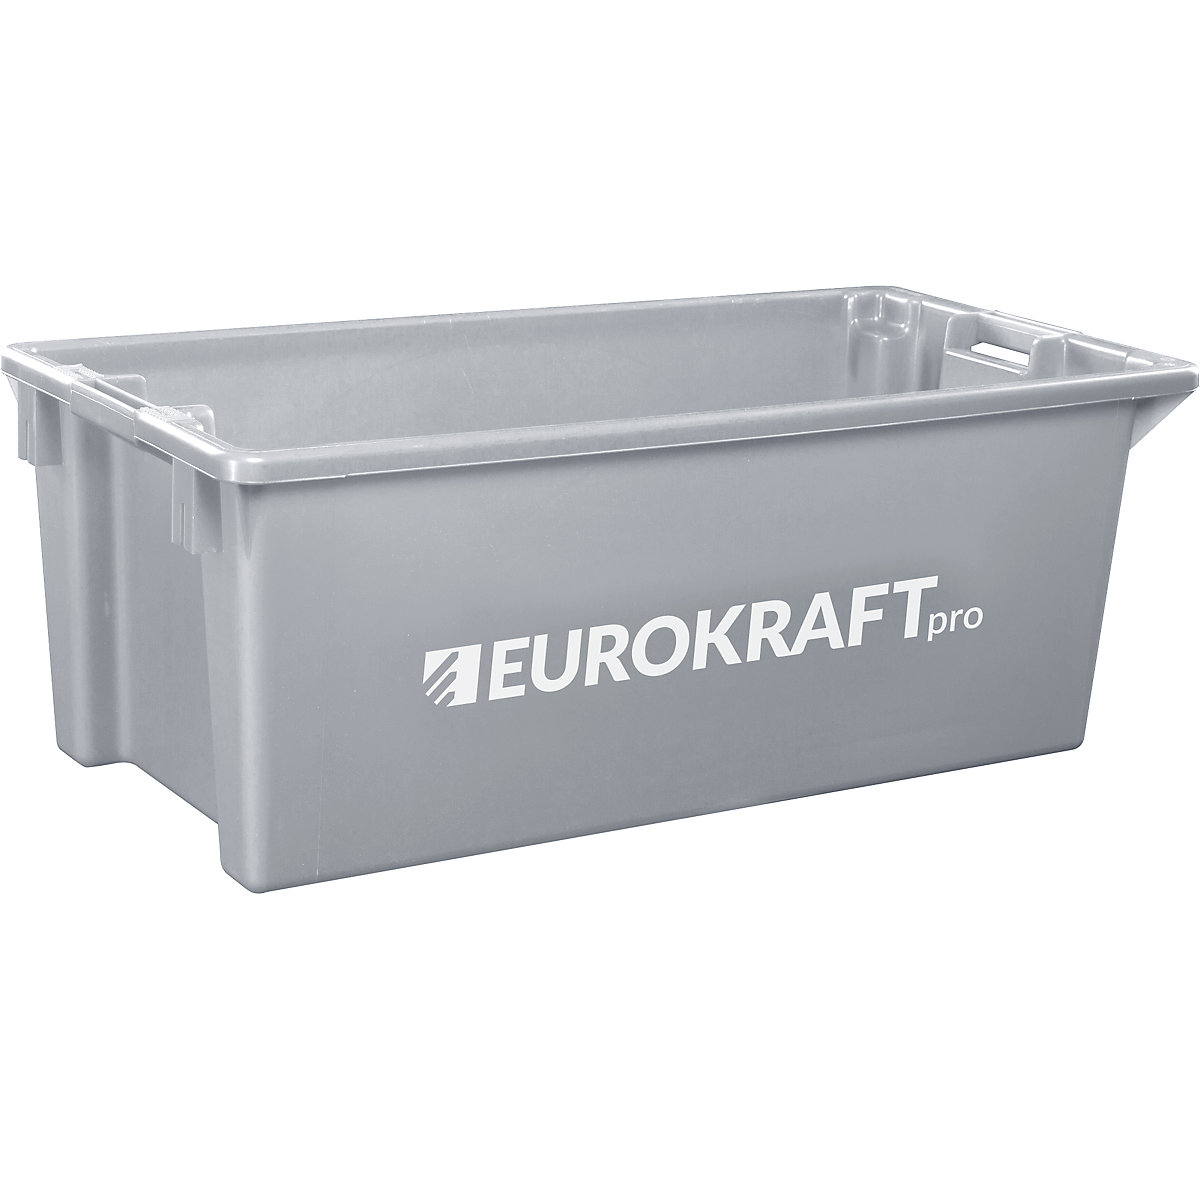 EUROKRAFTpro – Otočná stohovacia nádoba z polypropylénu vhodného pre potraviny, objem 13 litrov, OJ 4 ks, steny a dno uzatvorené, šedá